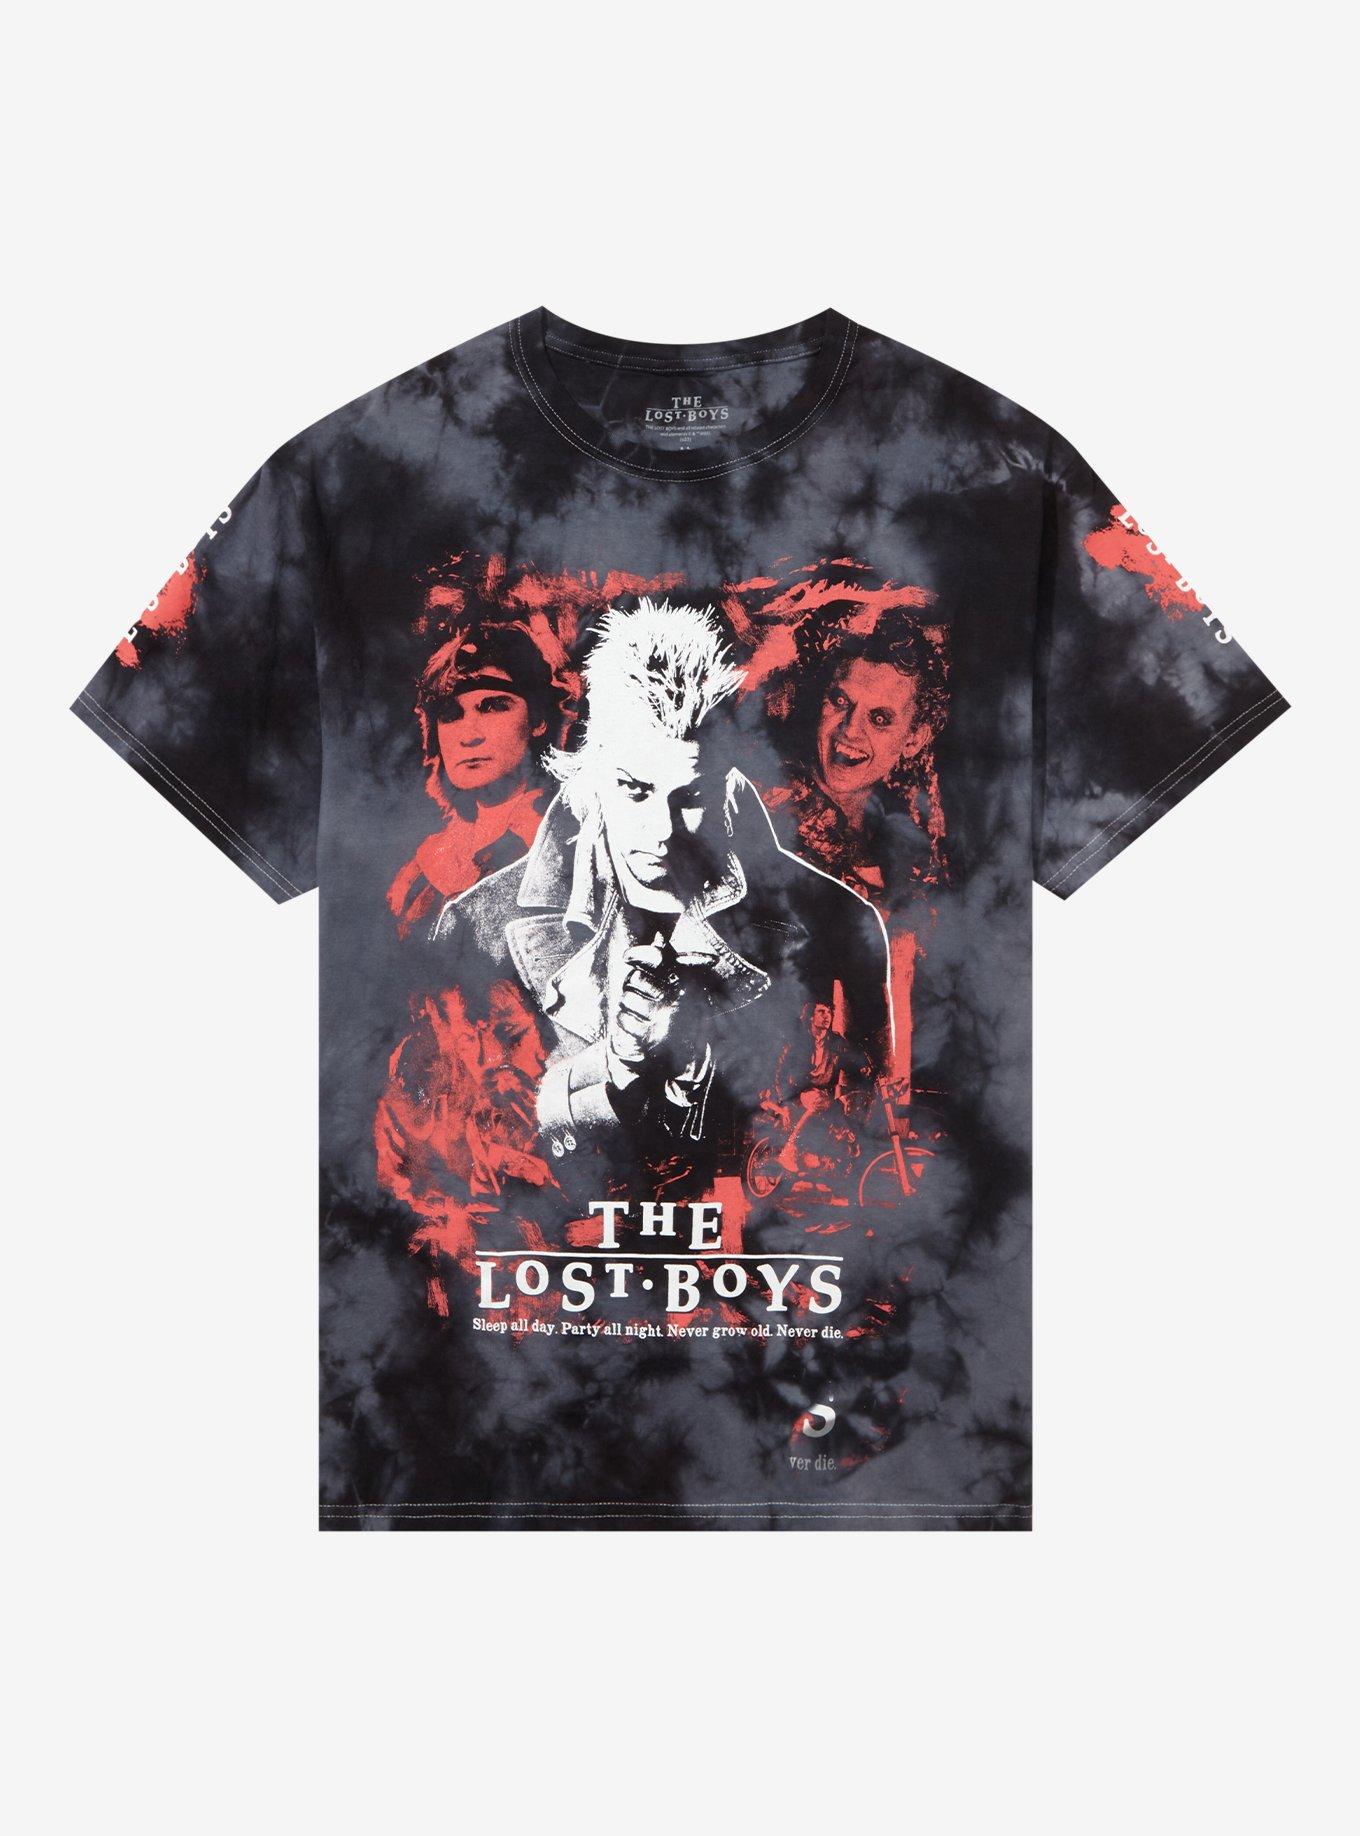 The Lost Boys Characters Tie-Dye Boyfriend Fit Girls T-Shirt